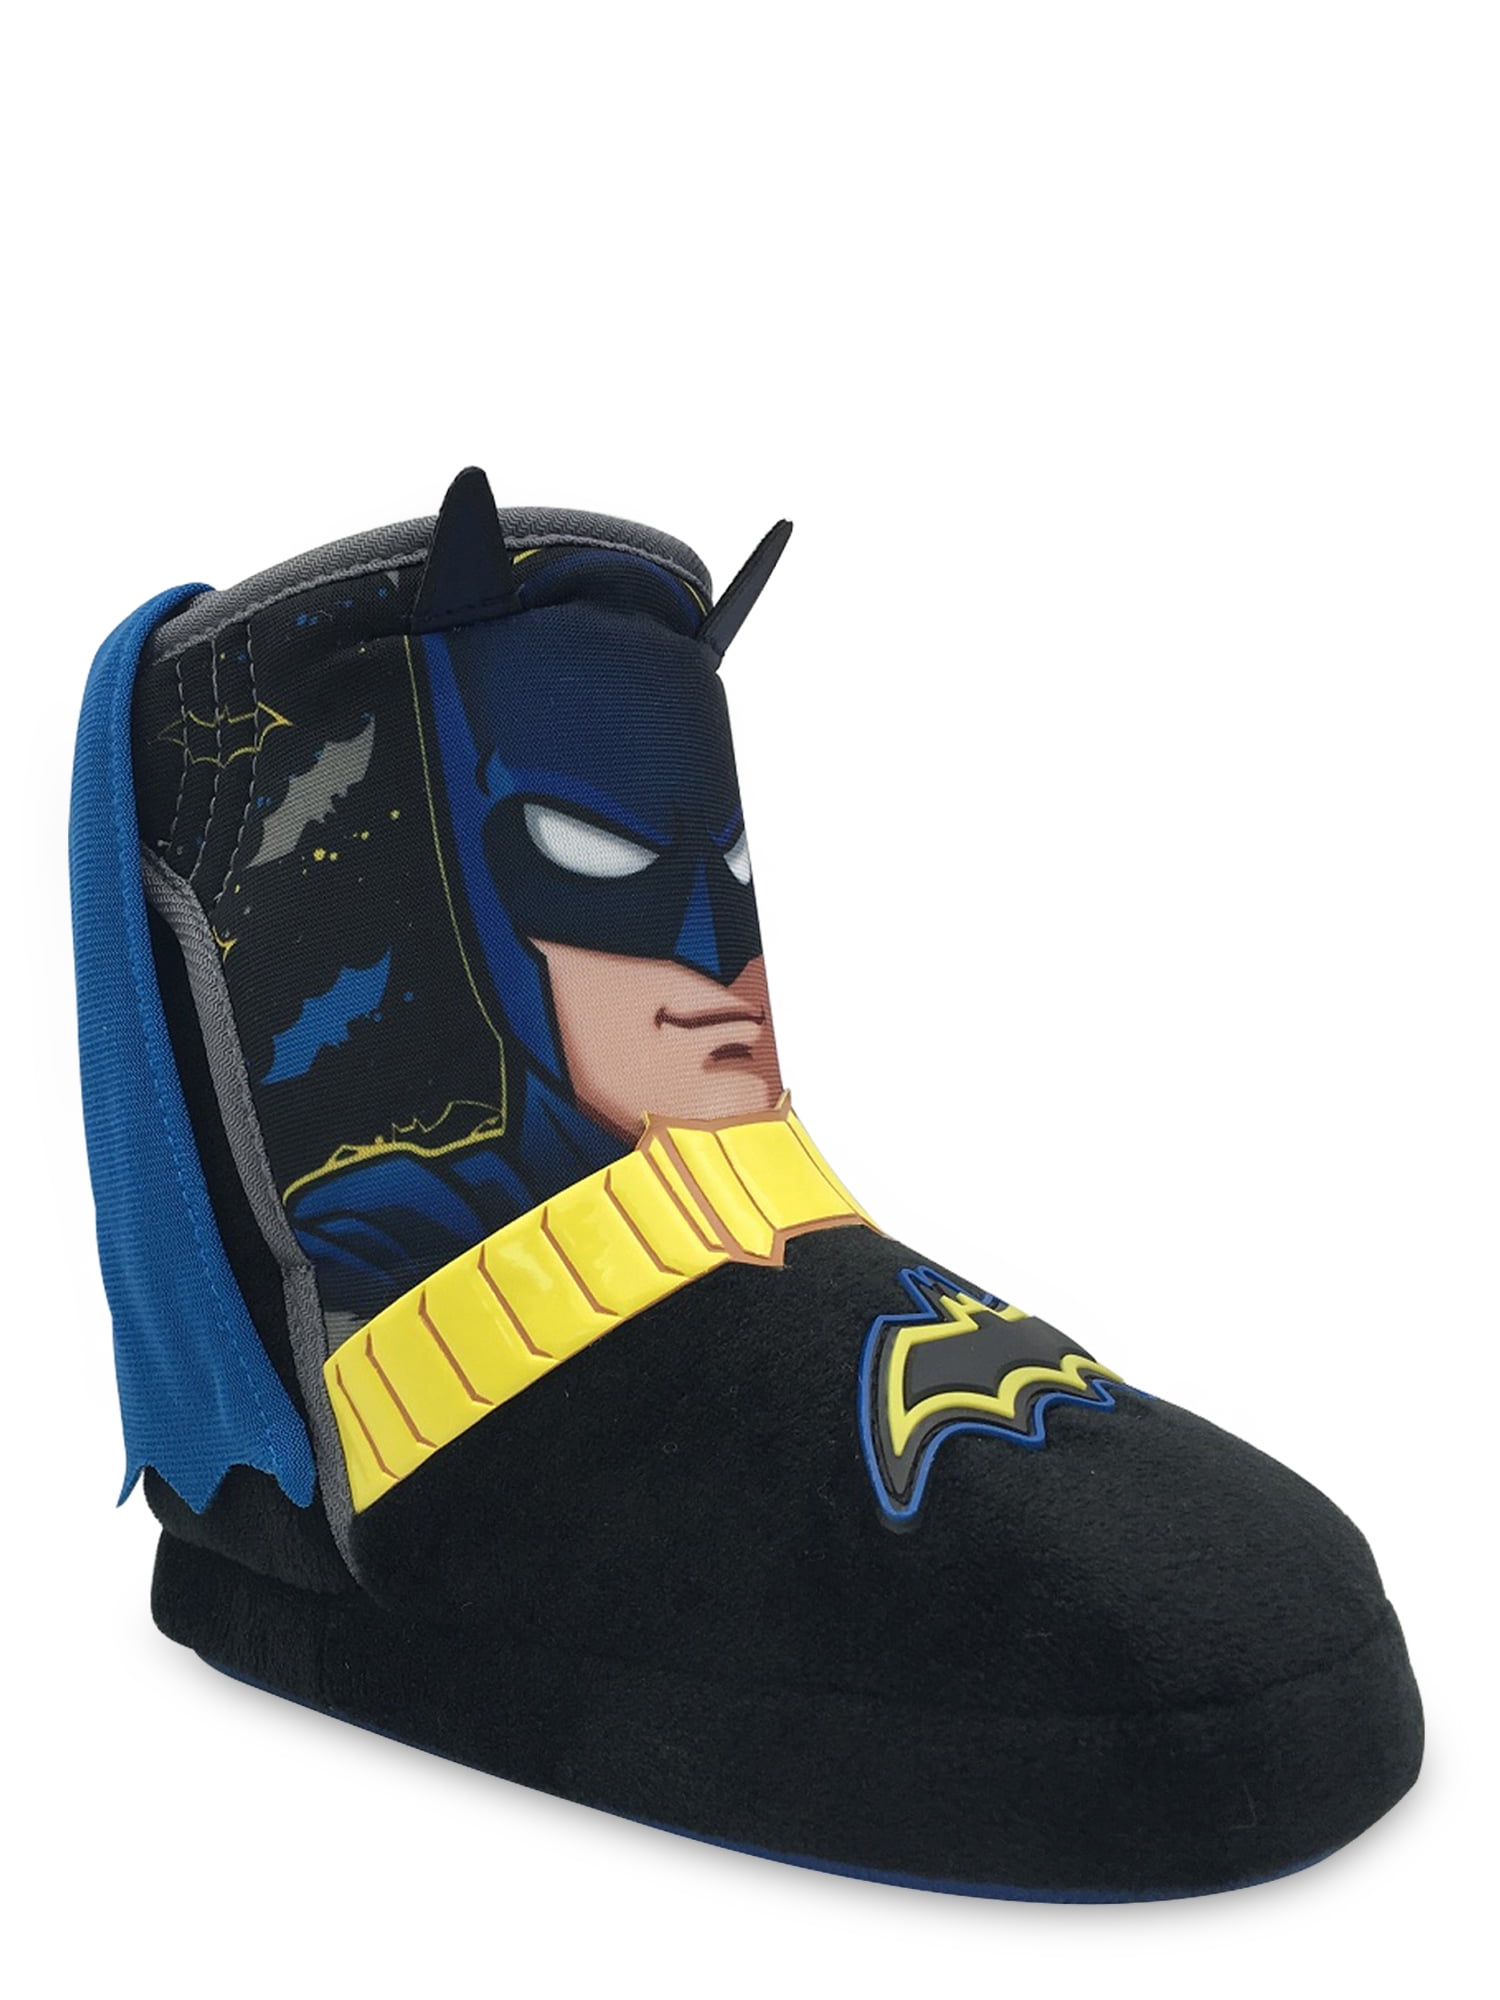 batman infant shoes